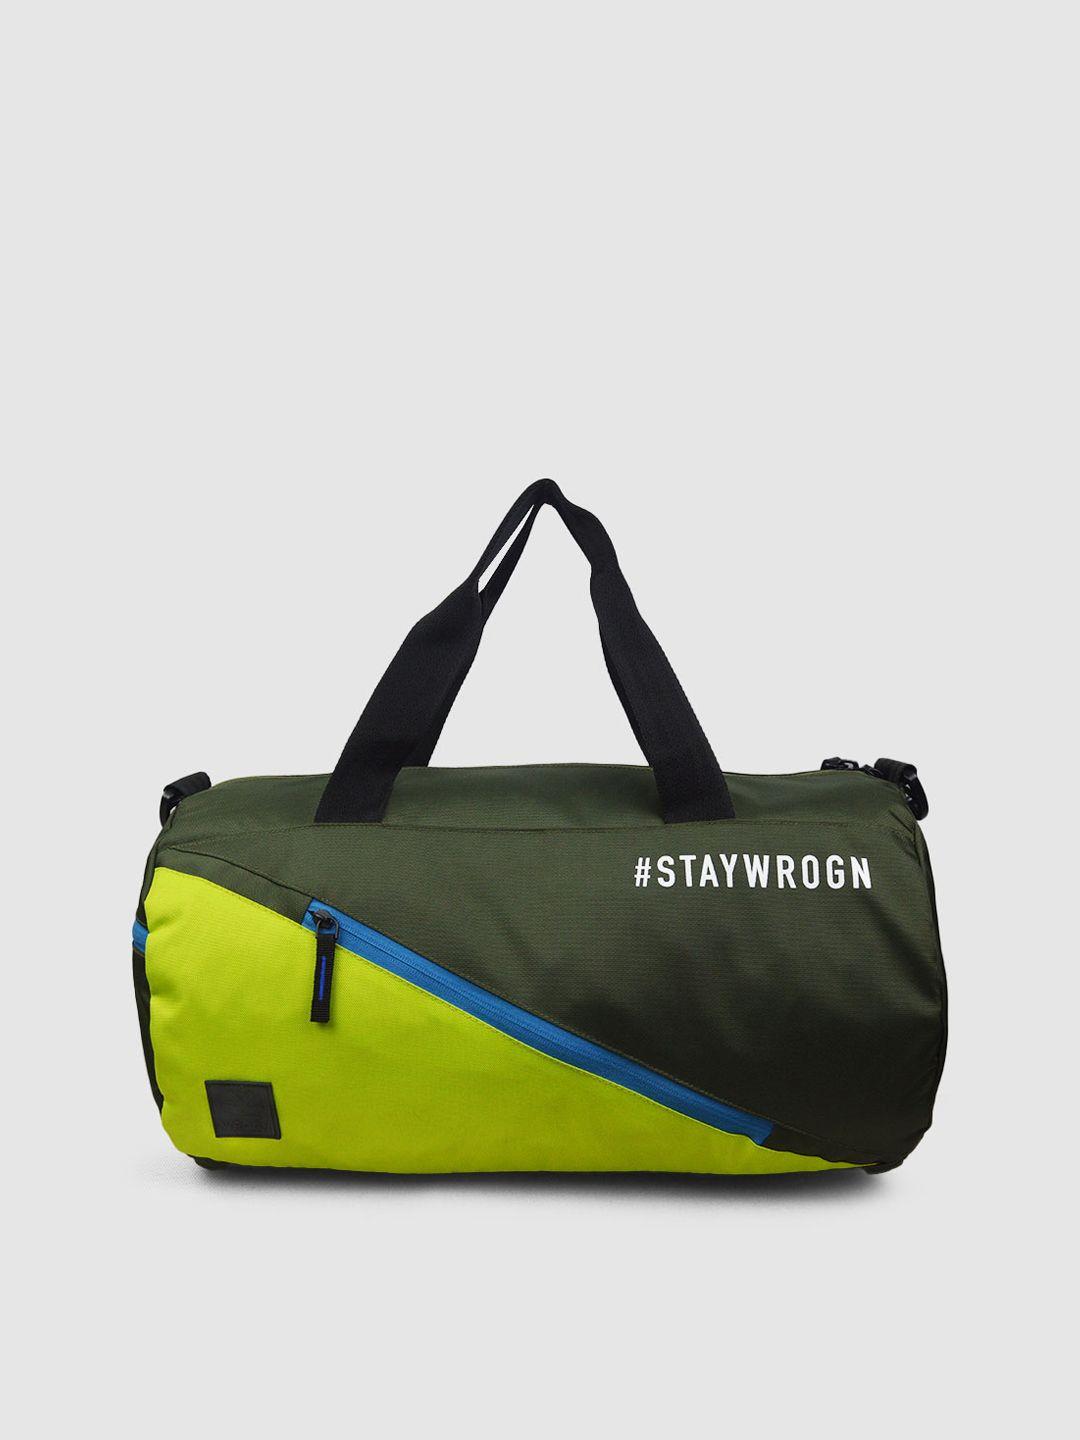 wrogn colourblocked lightweight duffel bag